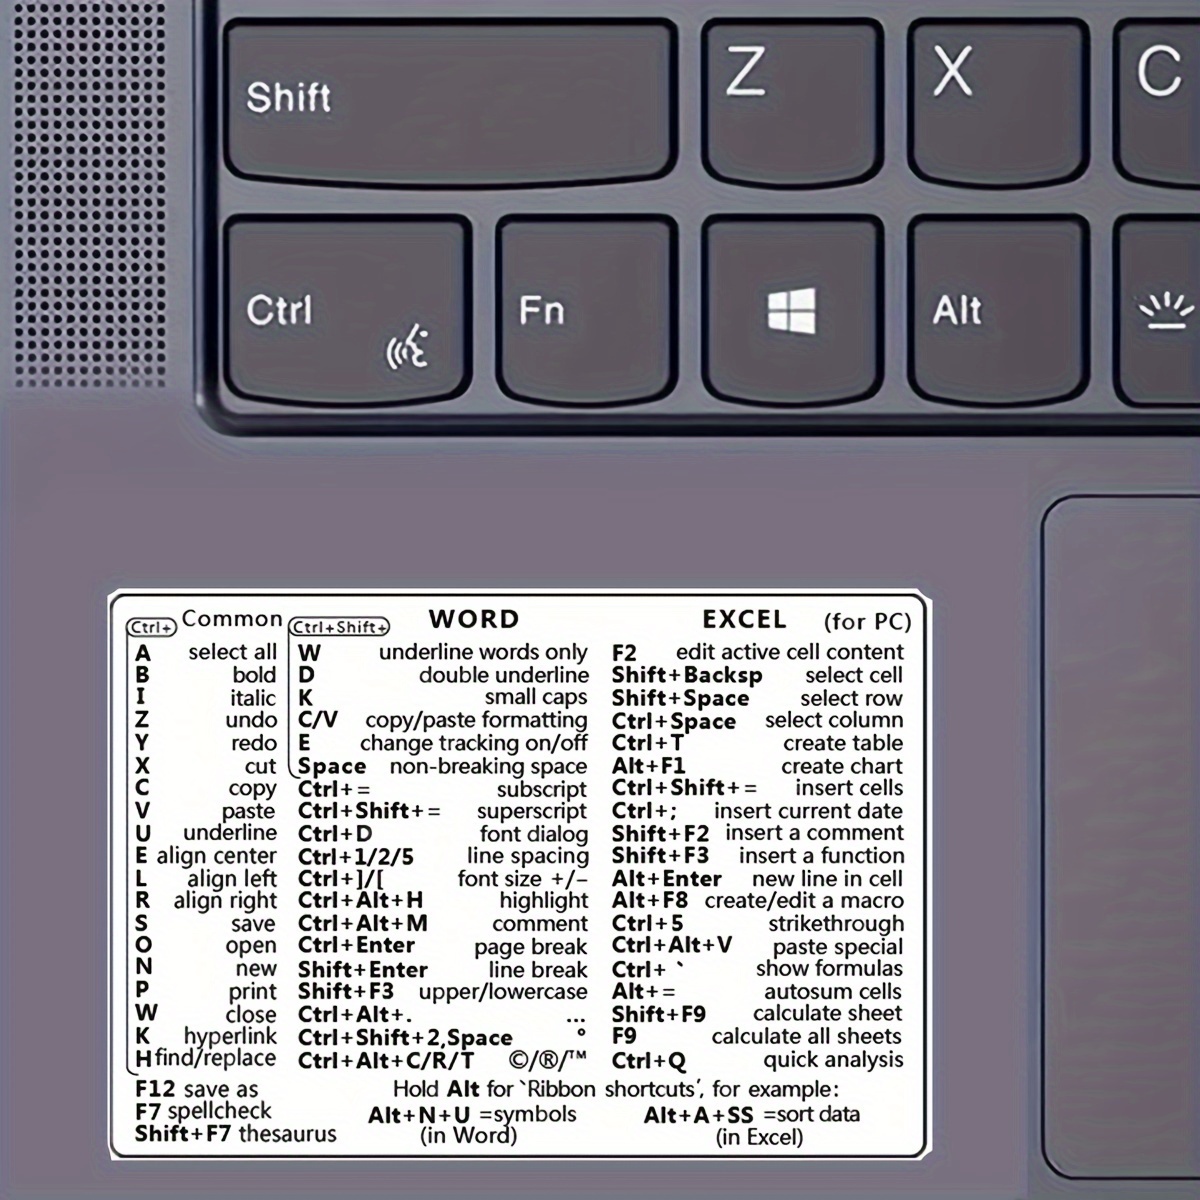 Autocollant avec les raccourcis clavier pour ordinateur portable